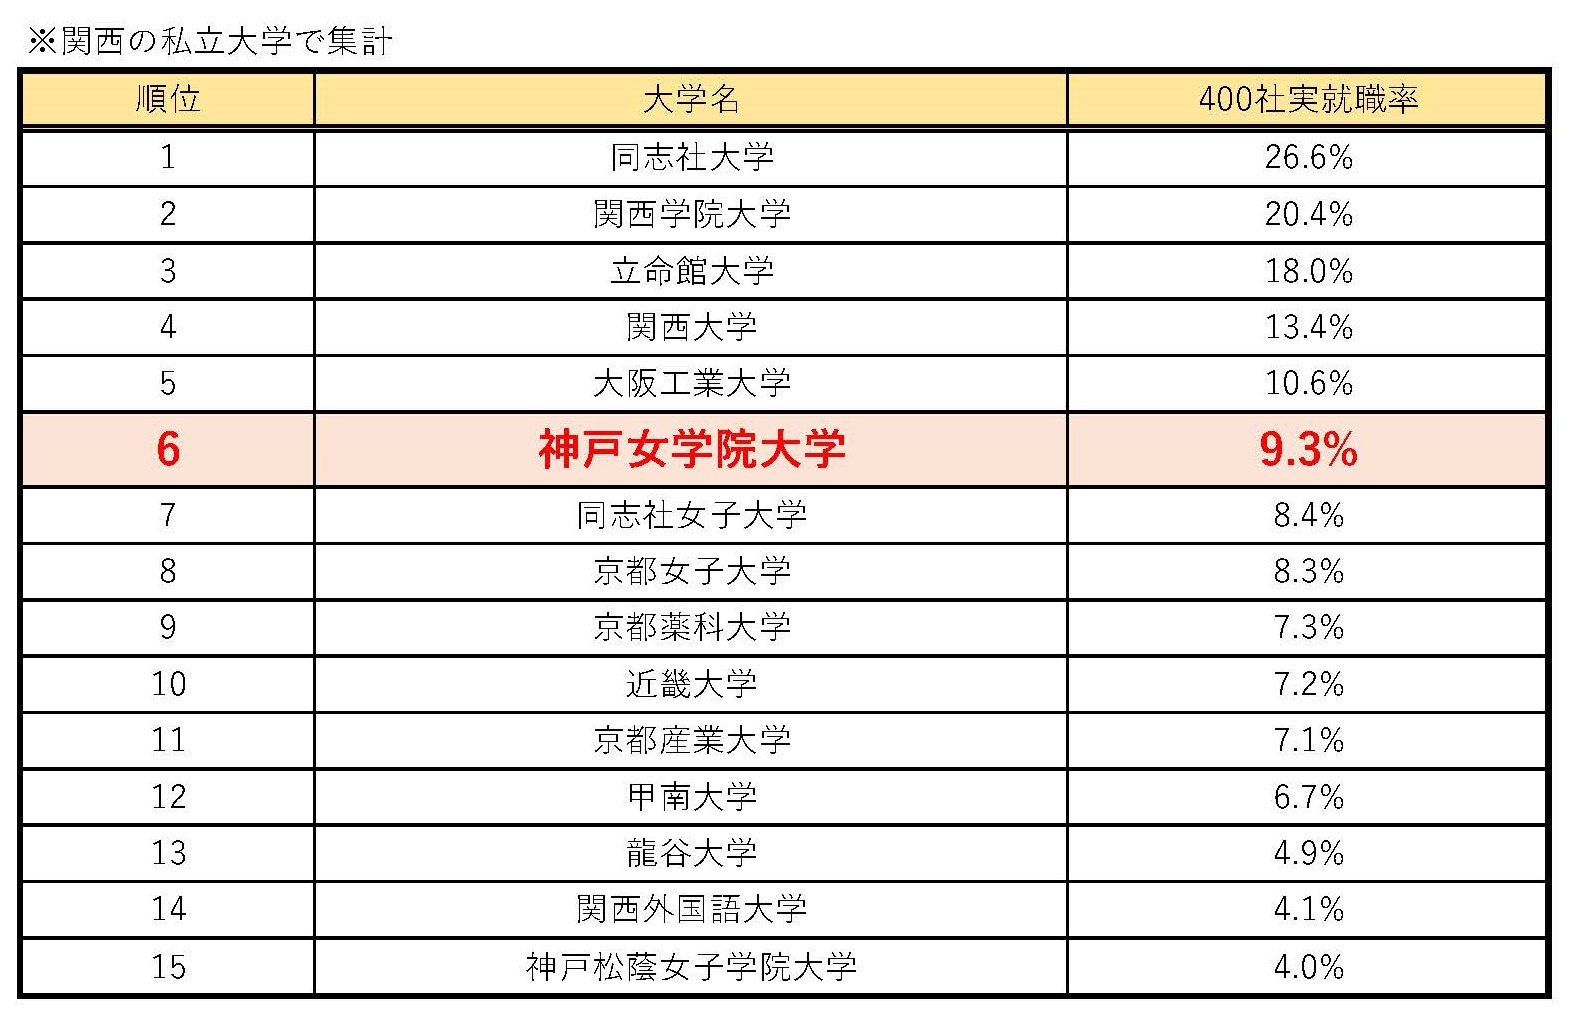 有名企業400社 実就職率ランキング で西日本の私立女子大学で1位に ニュース一覧 神戸女学院大学 Kobe College